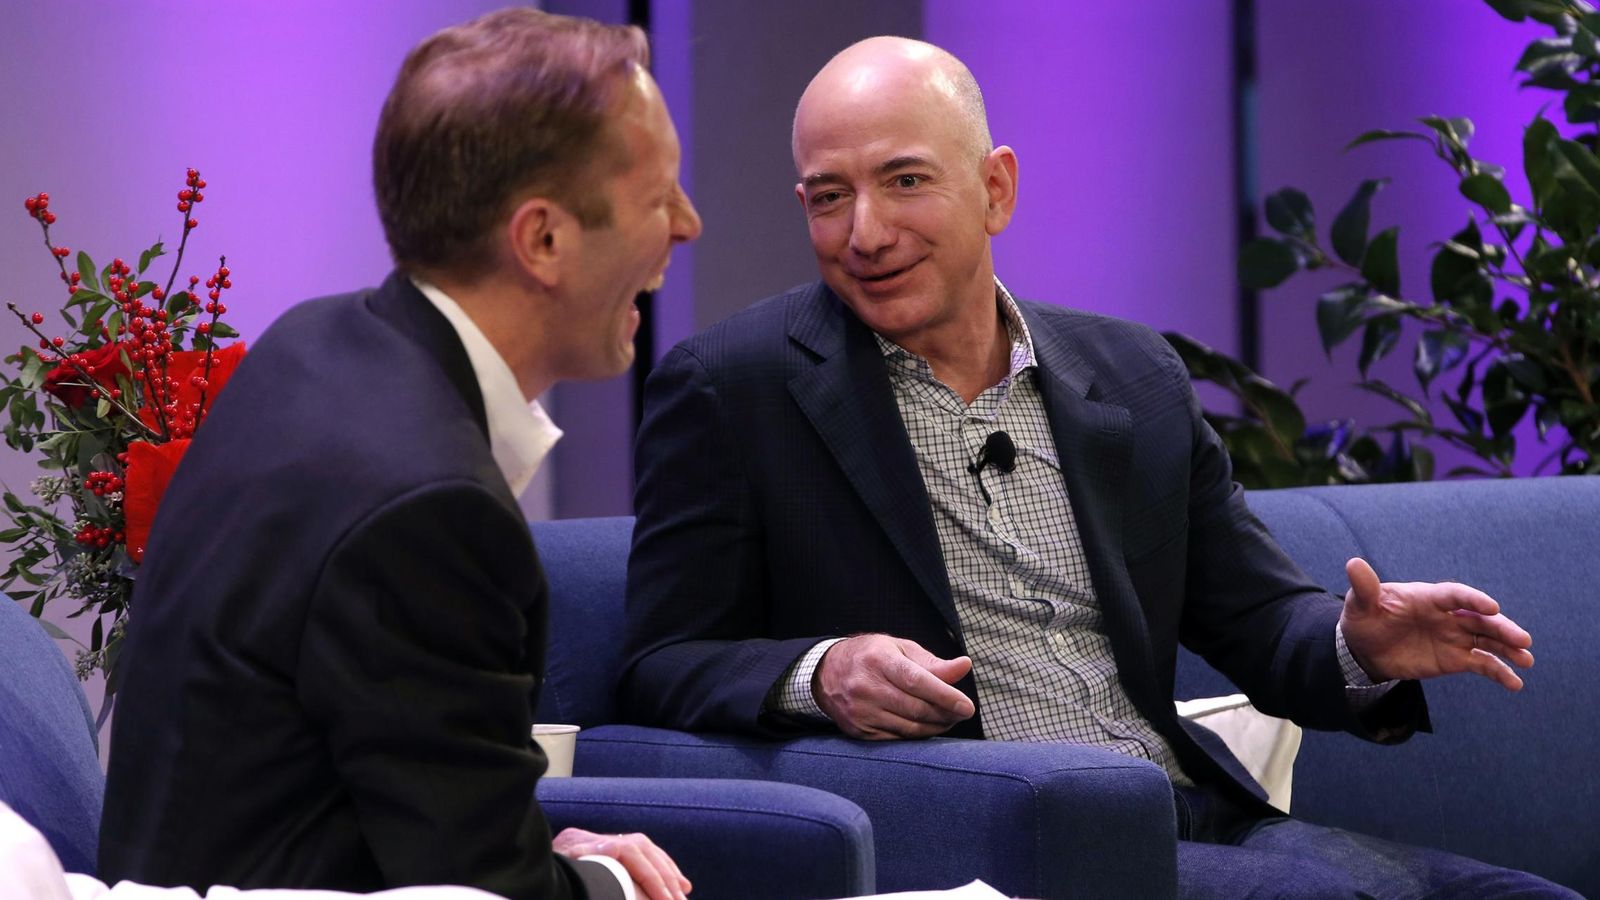 Foto: Henry Blodget, editor de Business Insider, conversa con Jeff Bezos, CEO de Amazon y propietario del Washington Post. (Reuters/Mike Segar)